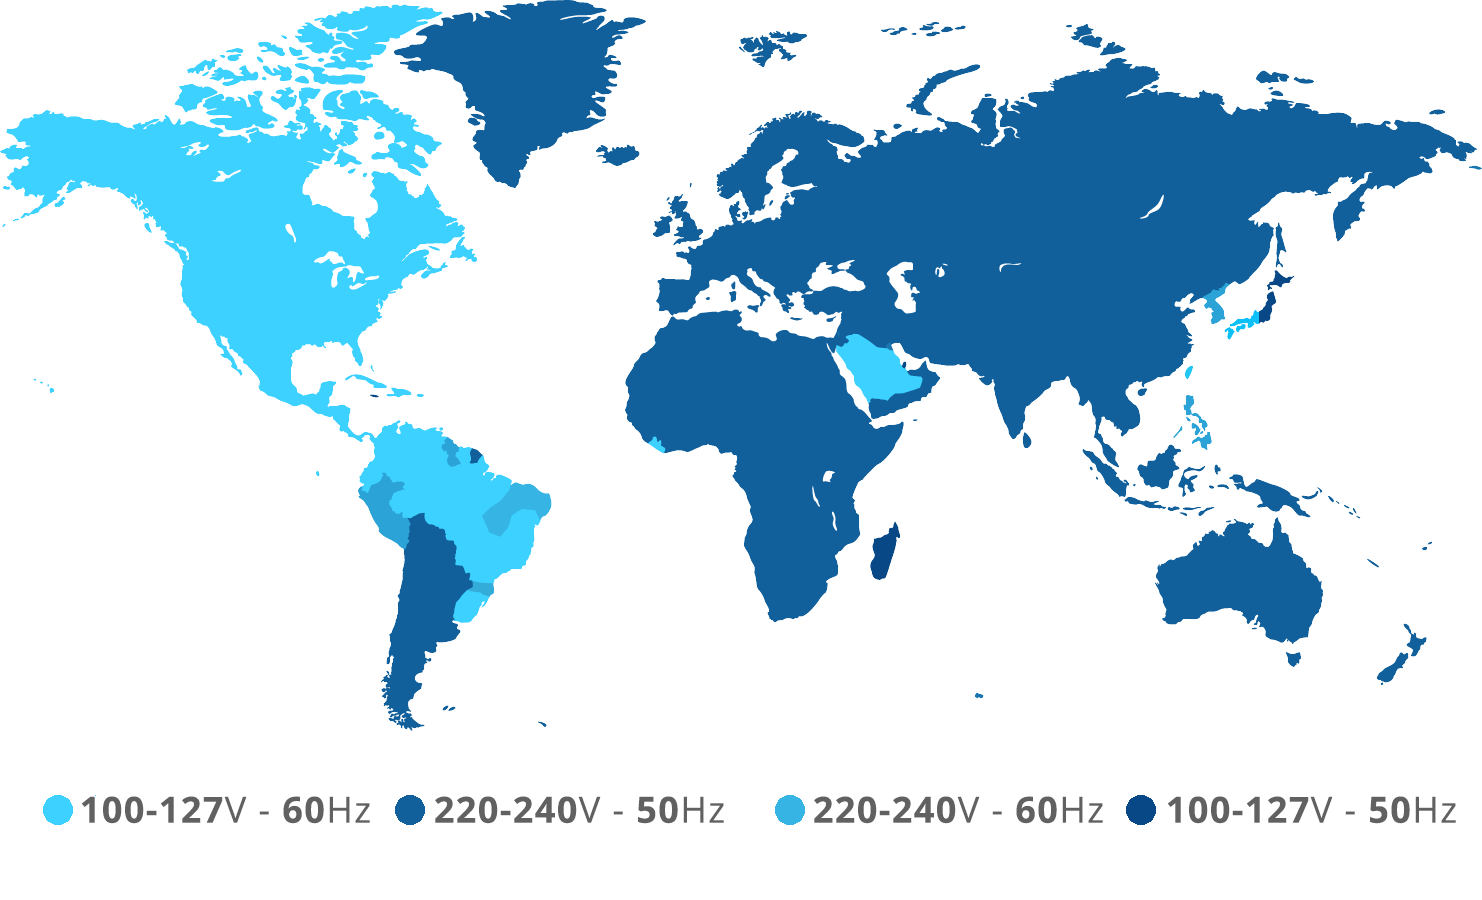 Carte mondiale des tensions et des fréquences utilisées à travers le monde